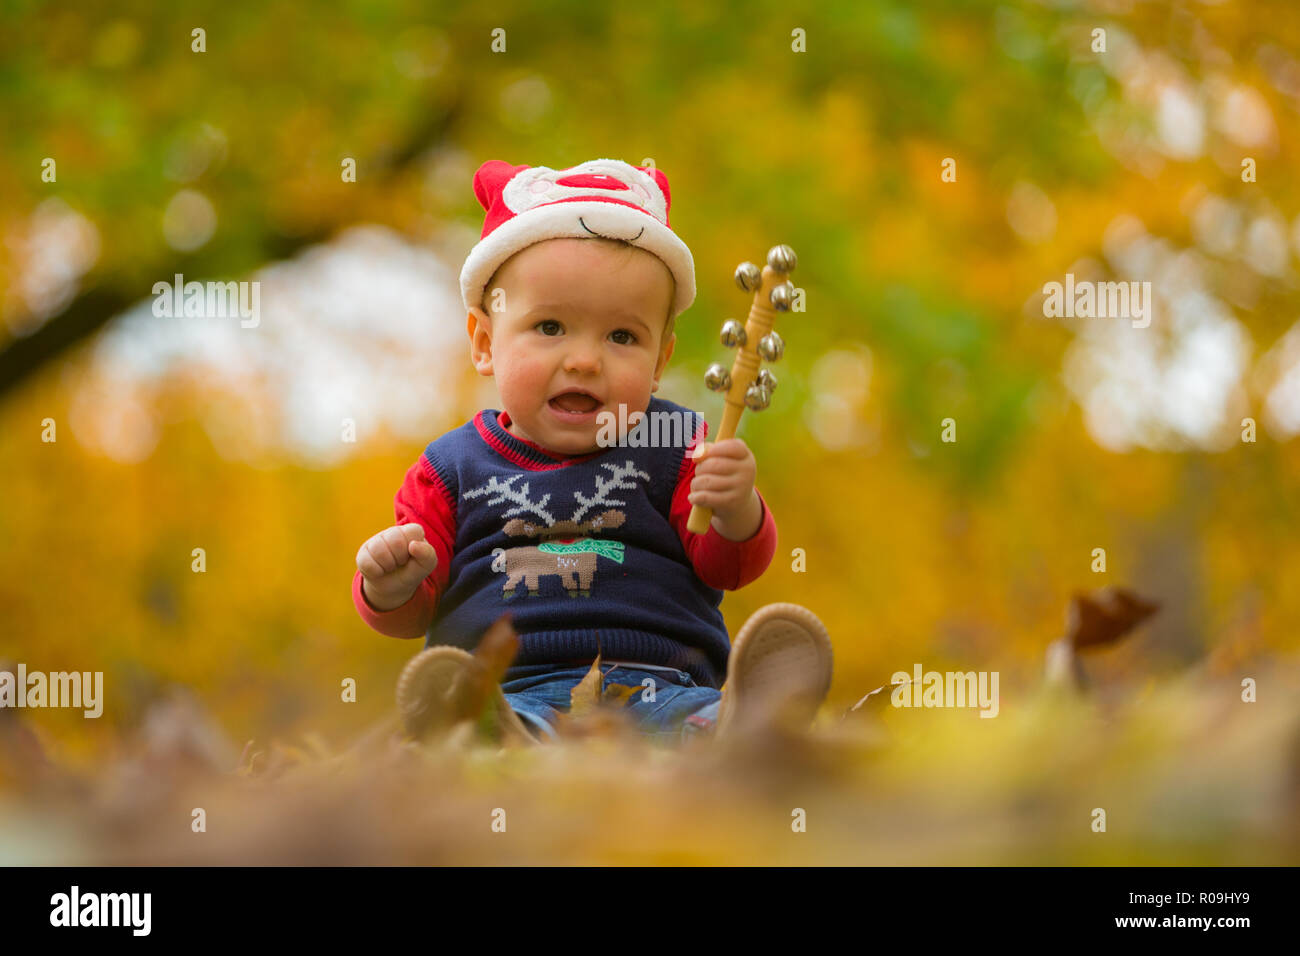 18 mese old boy ubicazione in foglie di autunno di natale che indossa abiti stagionali Foto Stock